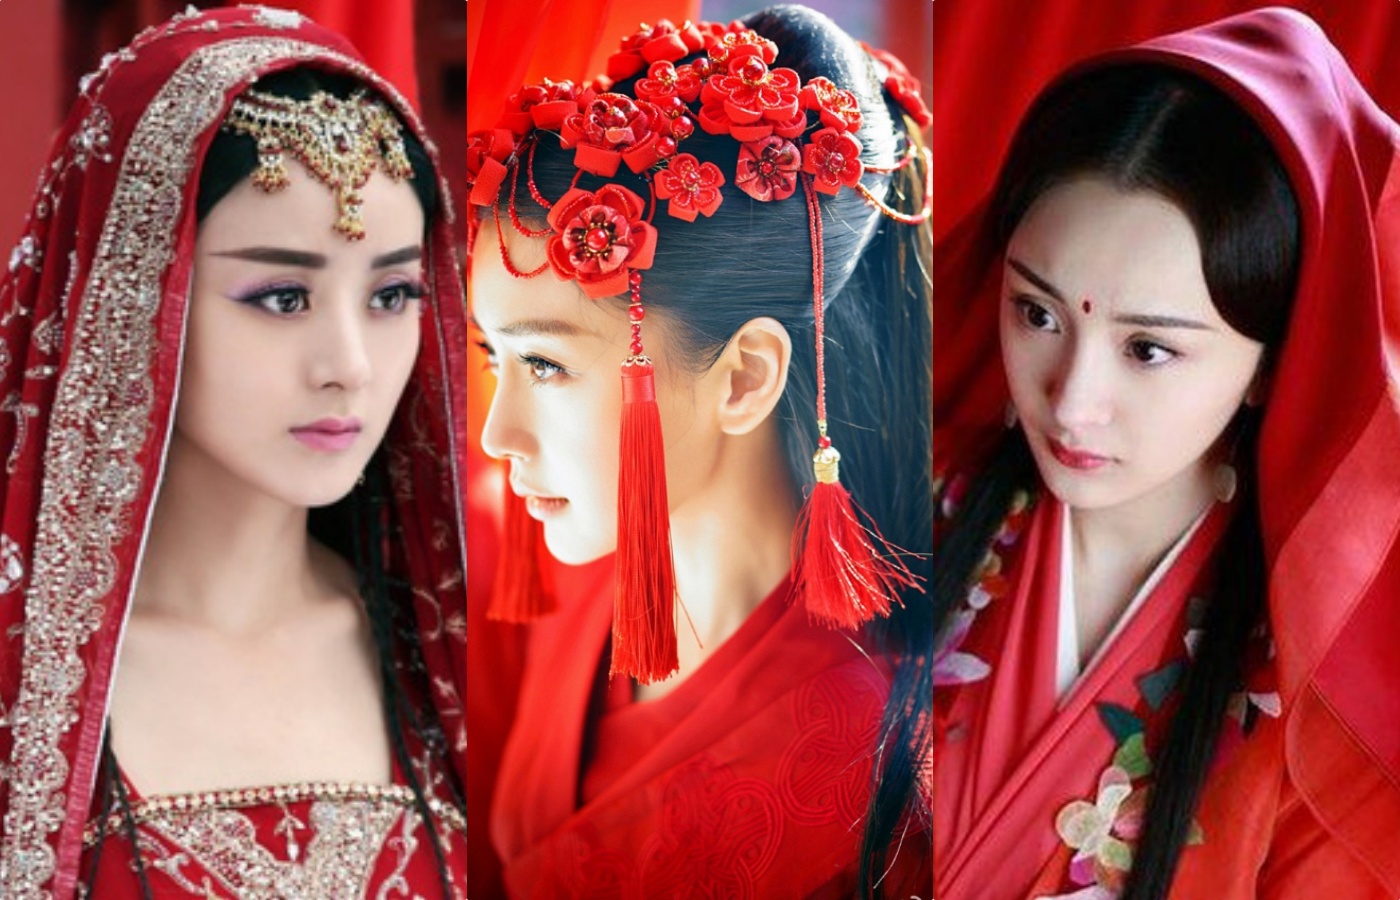 Váy đỏ rực rỡ nhất: Dương Mịch - Địch Lệ Nhiệt Ba đẹp mê mẩn nhưng ...